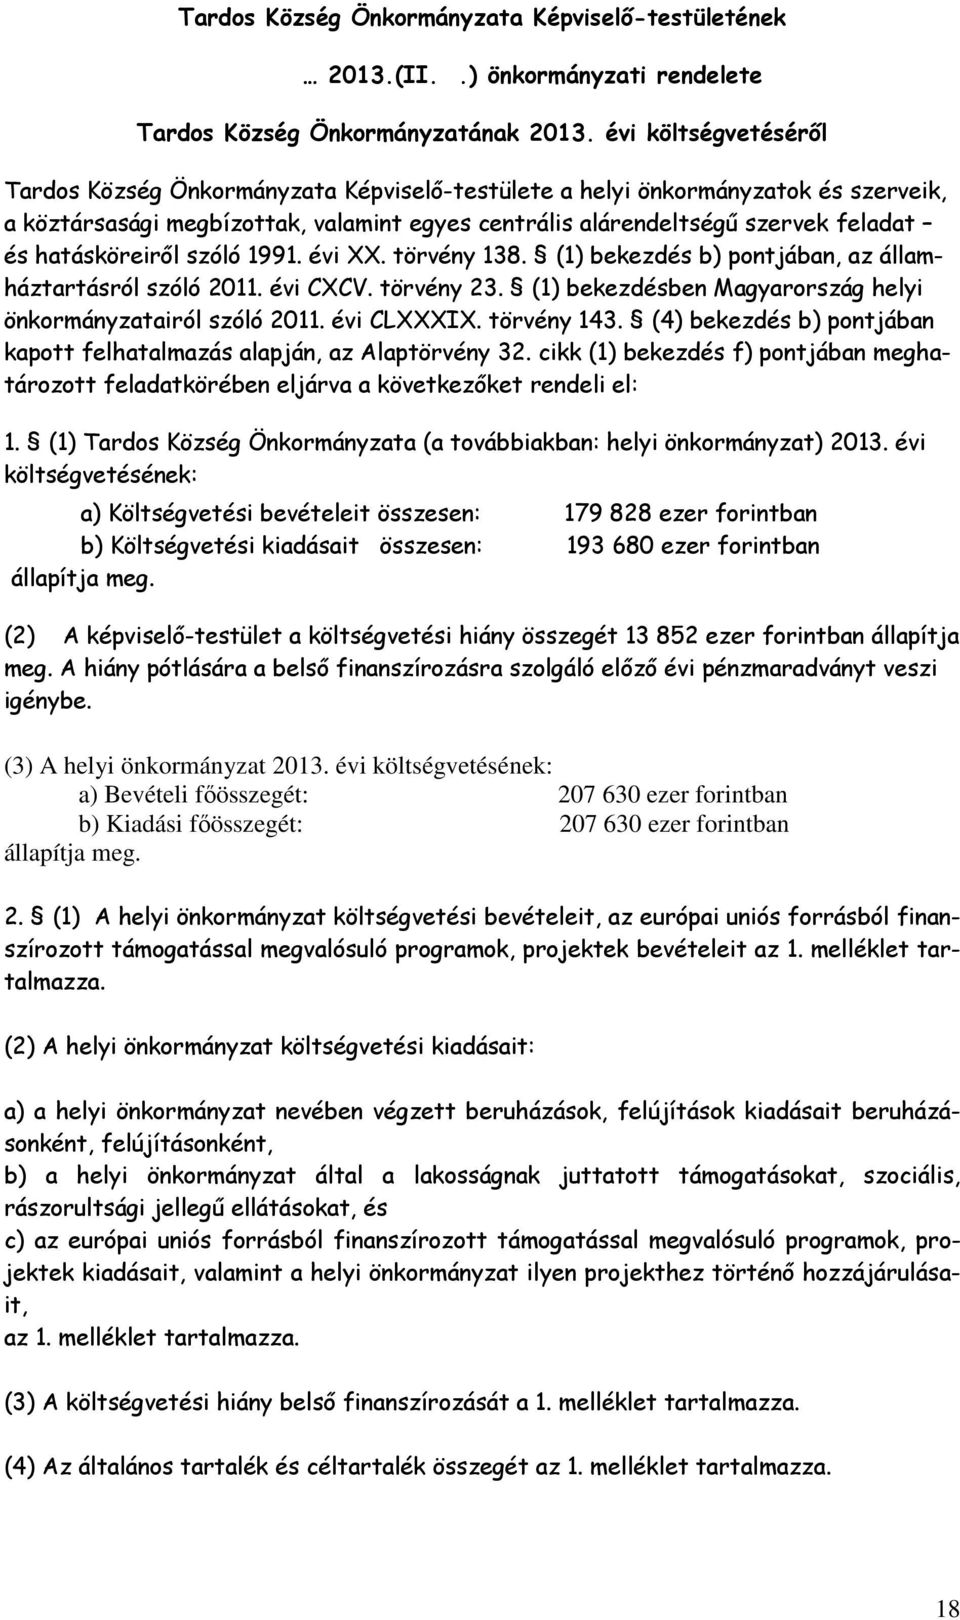 hatásköreiről szóló 1991. évi XX. törvény 138. (1) bekezdés b) pontjában, az államháztartásról szóló 2011. évi CXCV. törvény 23. (1) bekezdésben Magyarország helyi önkormányzatairól szóló 2011.